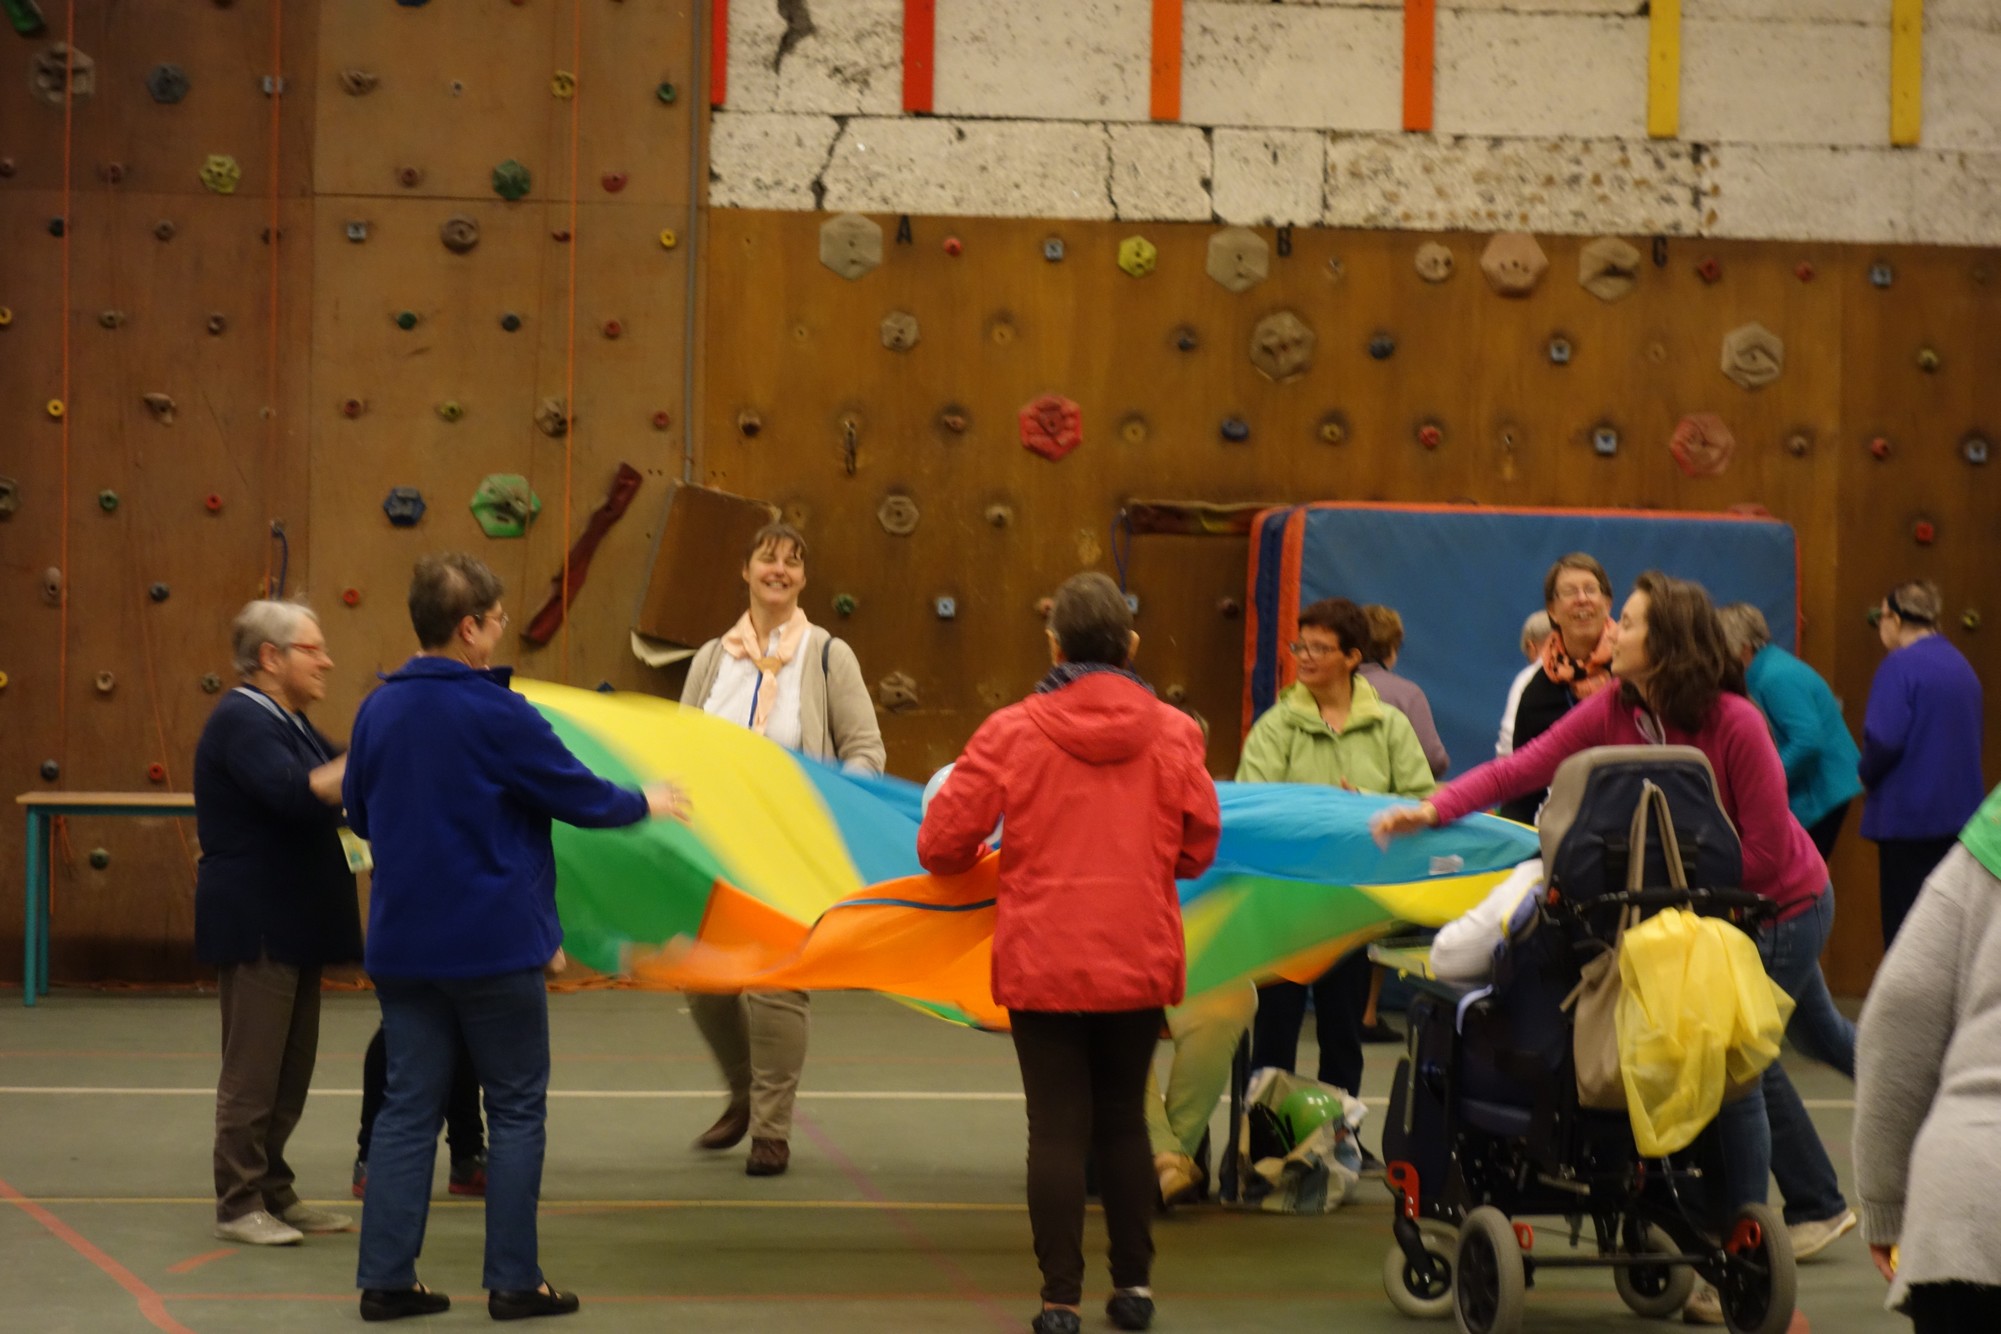 Groupes de personnes en situation de handicap et de volontaires jouant avec un parachute